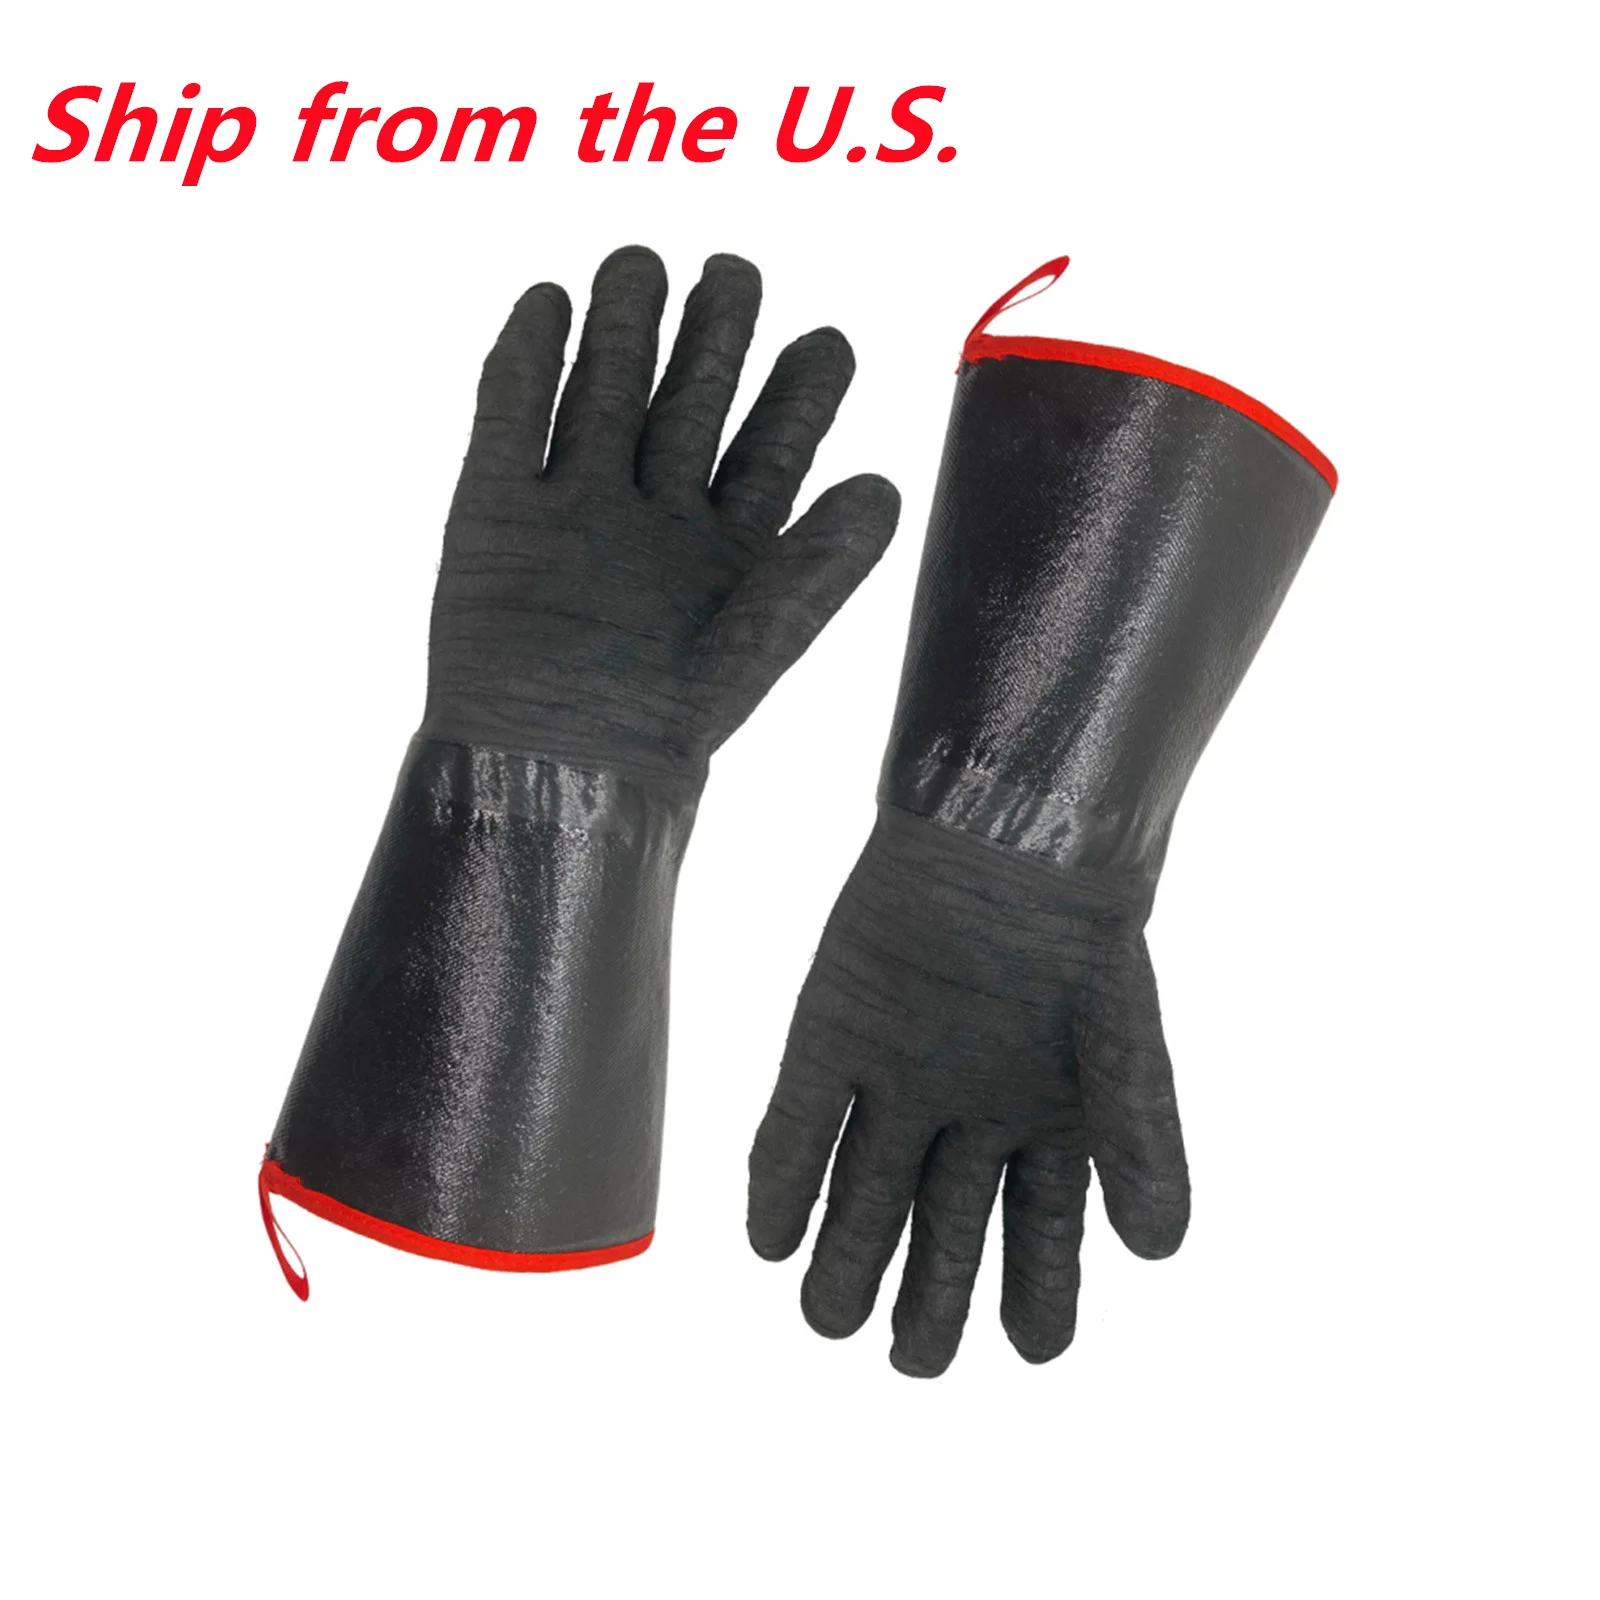 

Перчатки для духовки 14 "932 ℉, дымостойкие перчатки для гриля и барбекю, водонепроницаемые, огнестойкие (доставка из США)